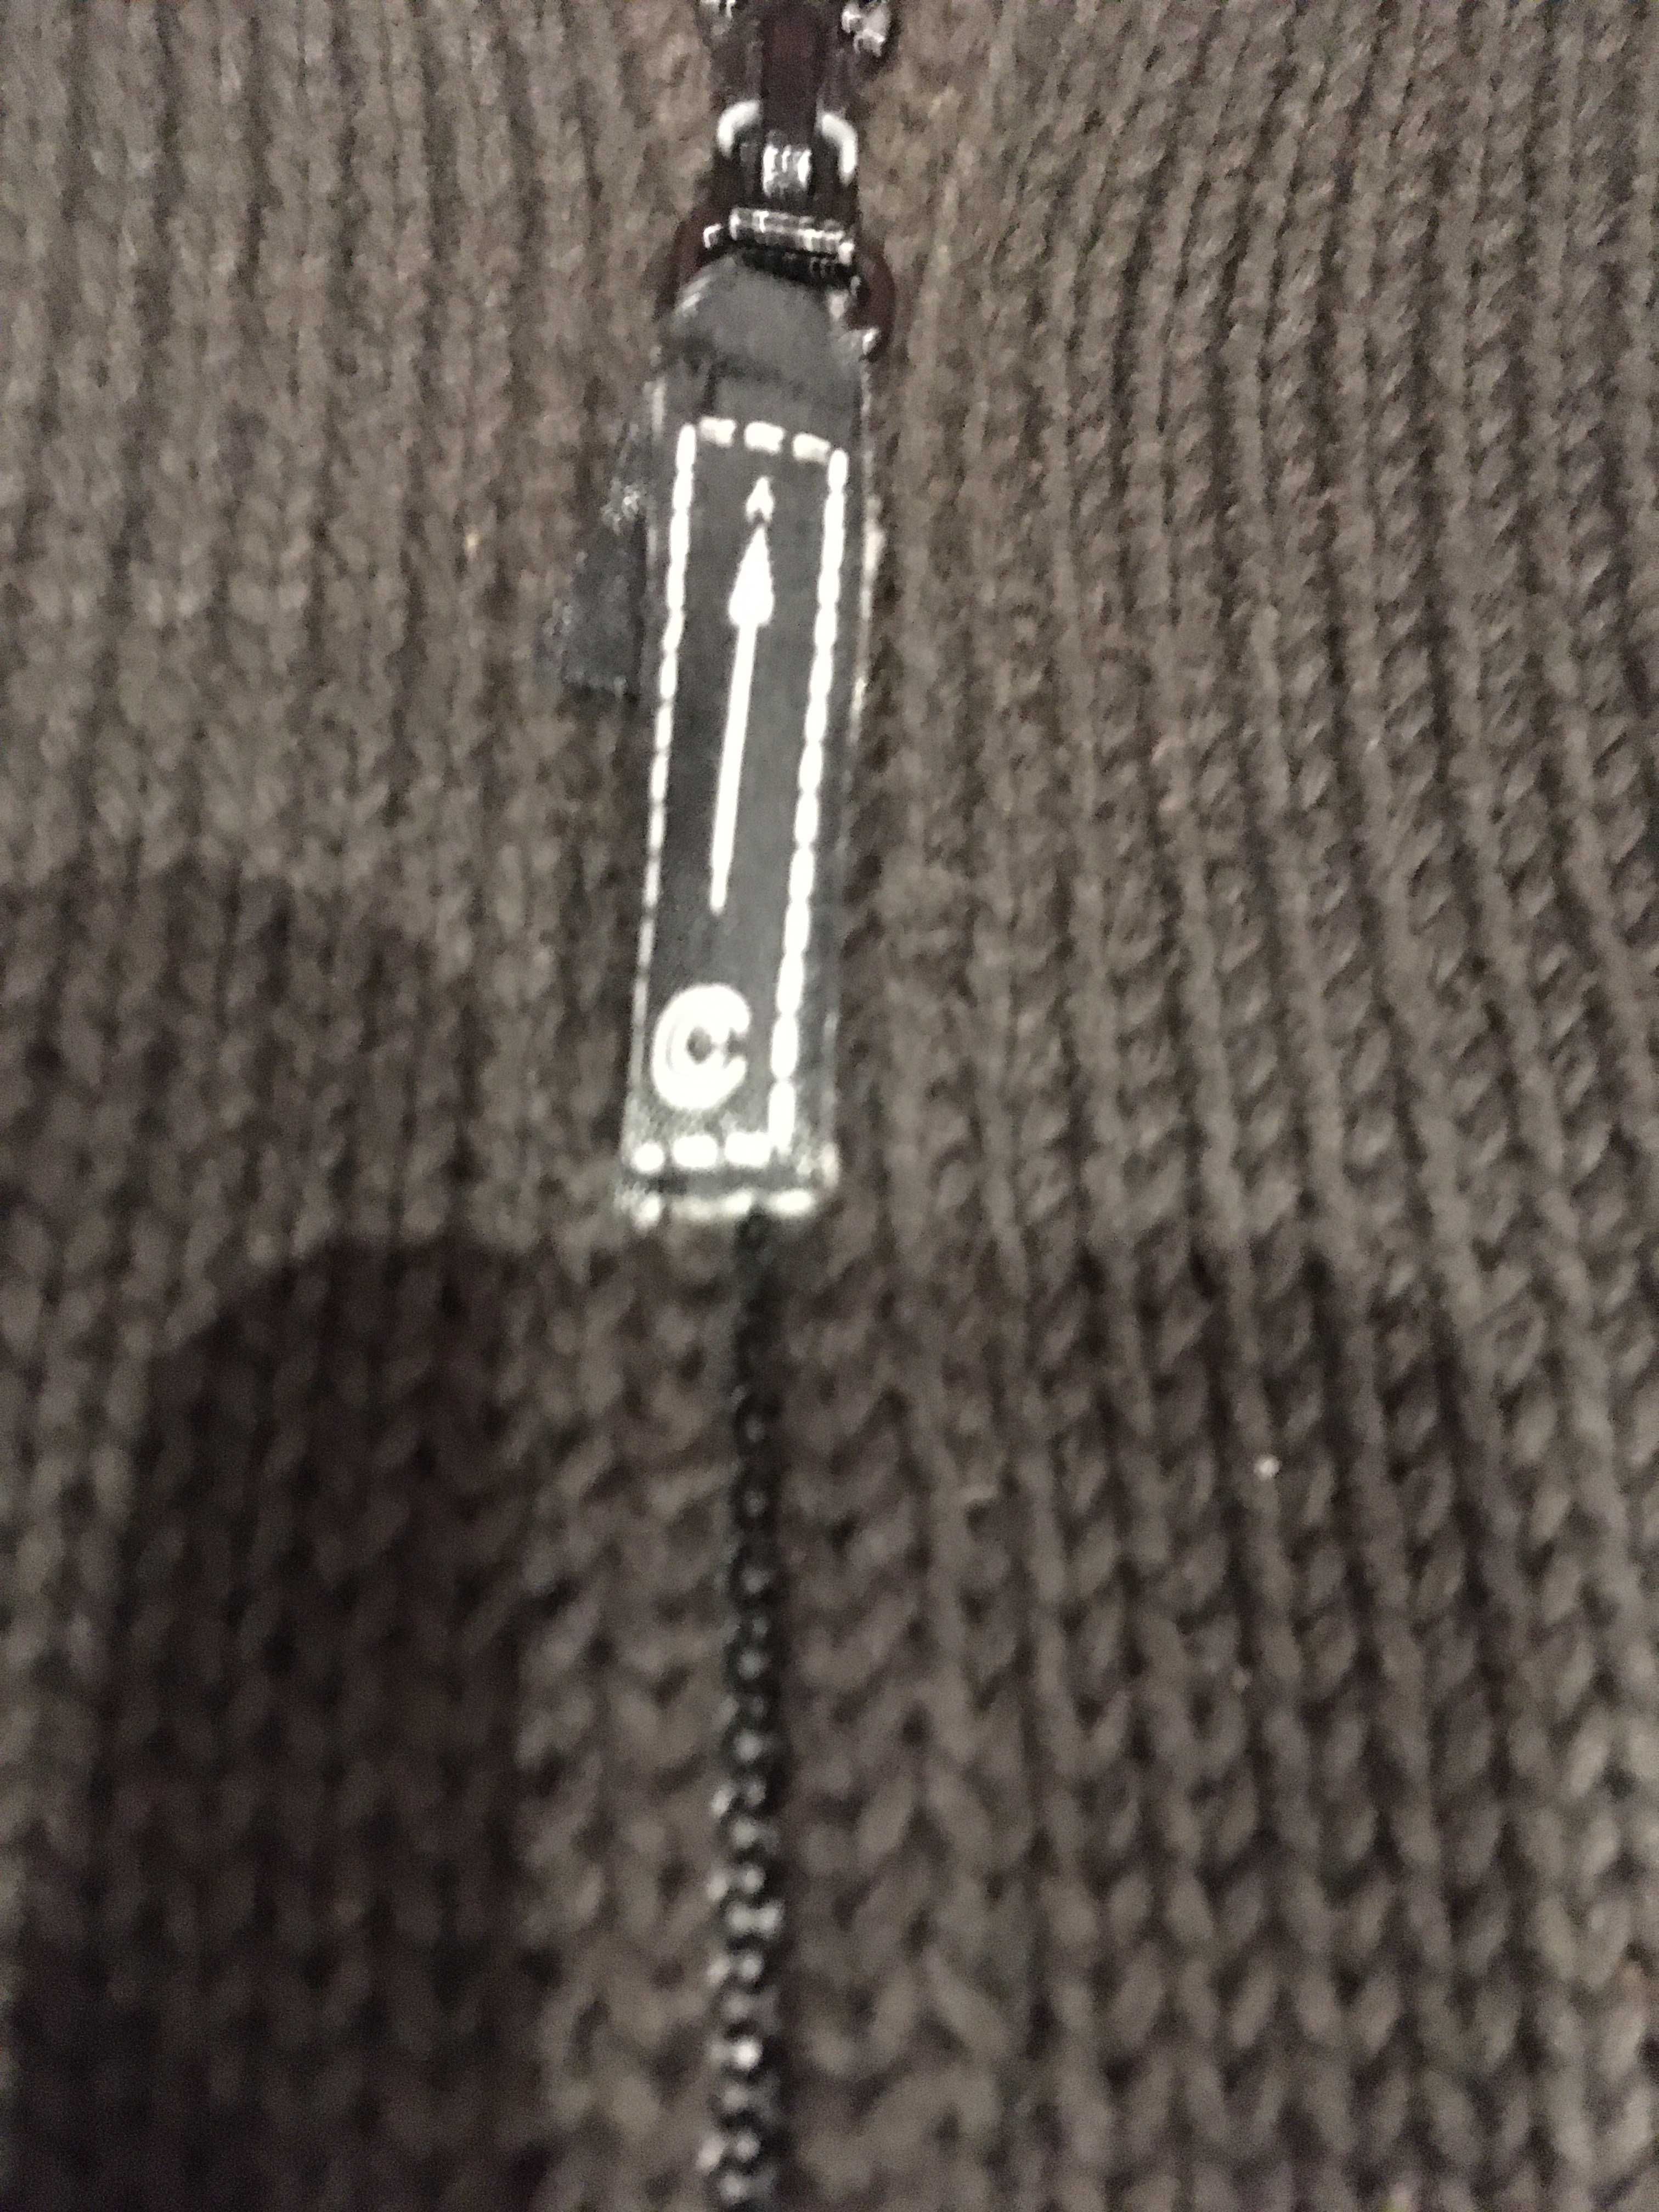 Sweter firmy Carry rozmiar XXL nowy